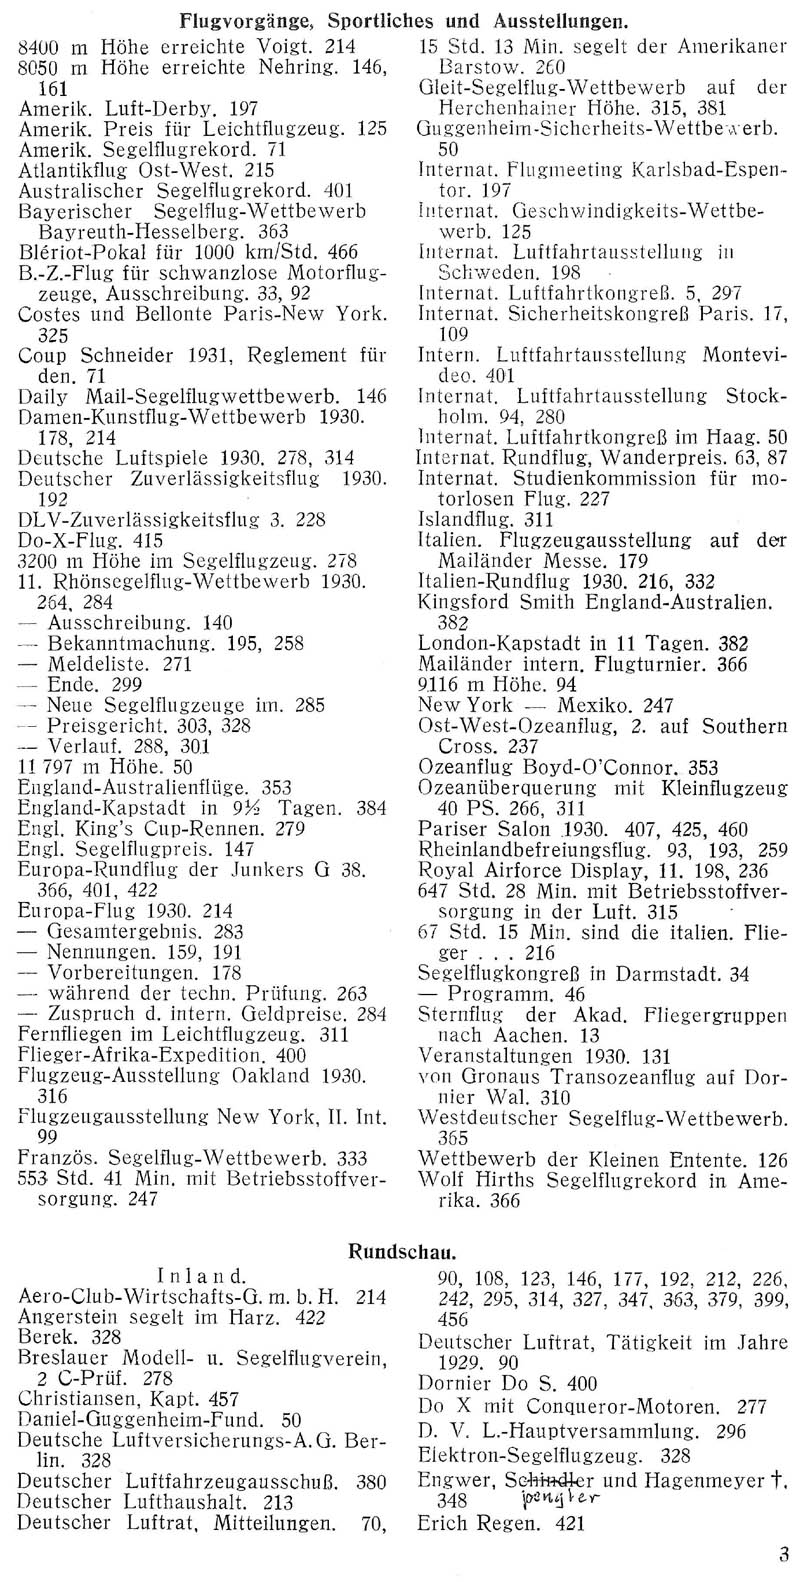 Sachregister und Inhaltsverzeichnis der Zeitschrift Flugsport für das Jahr 1930